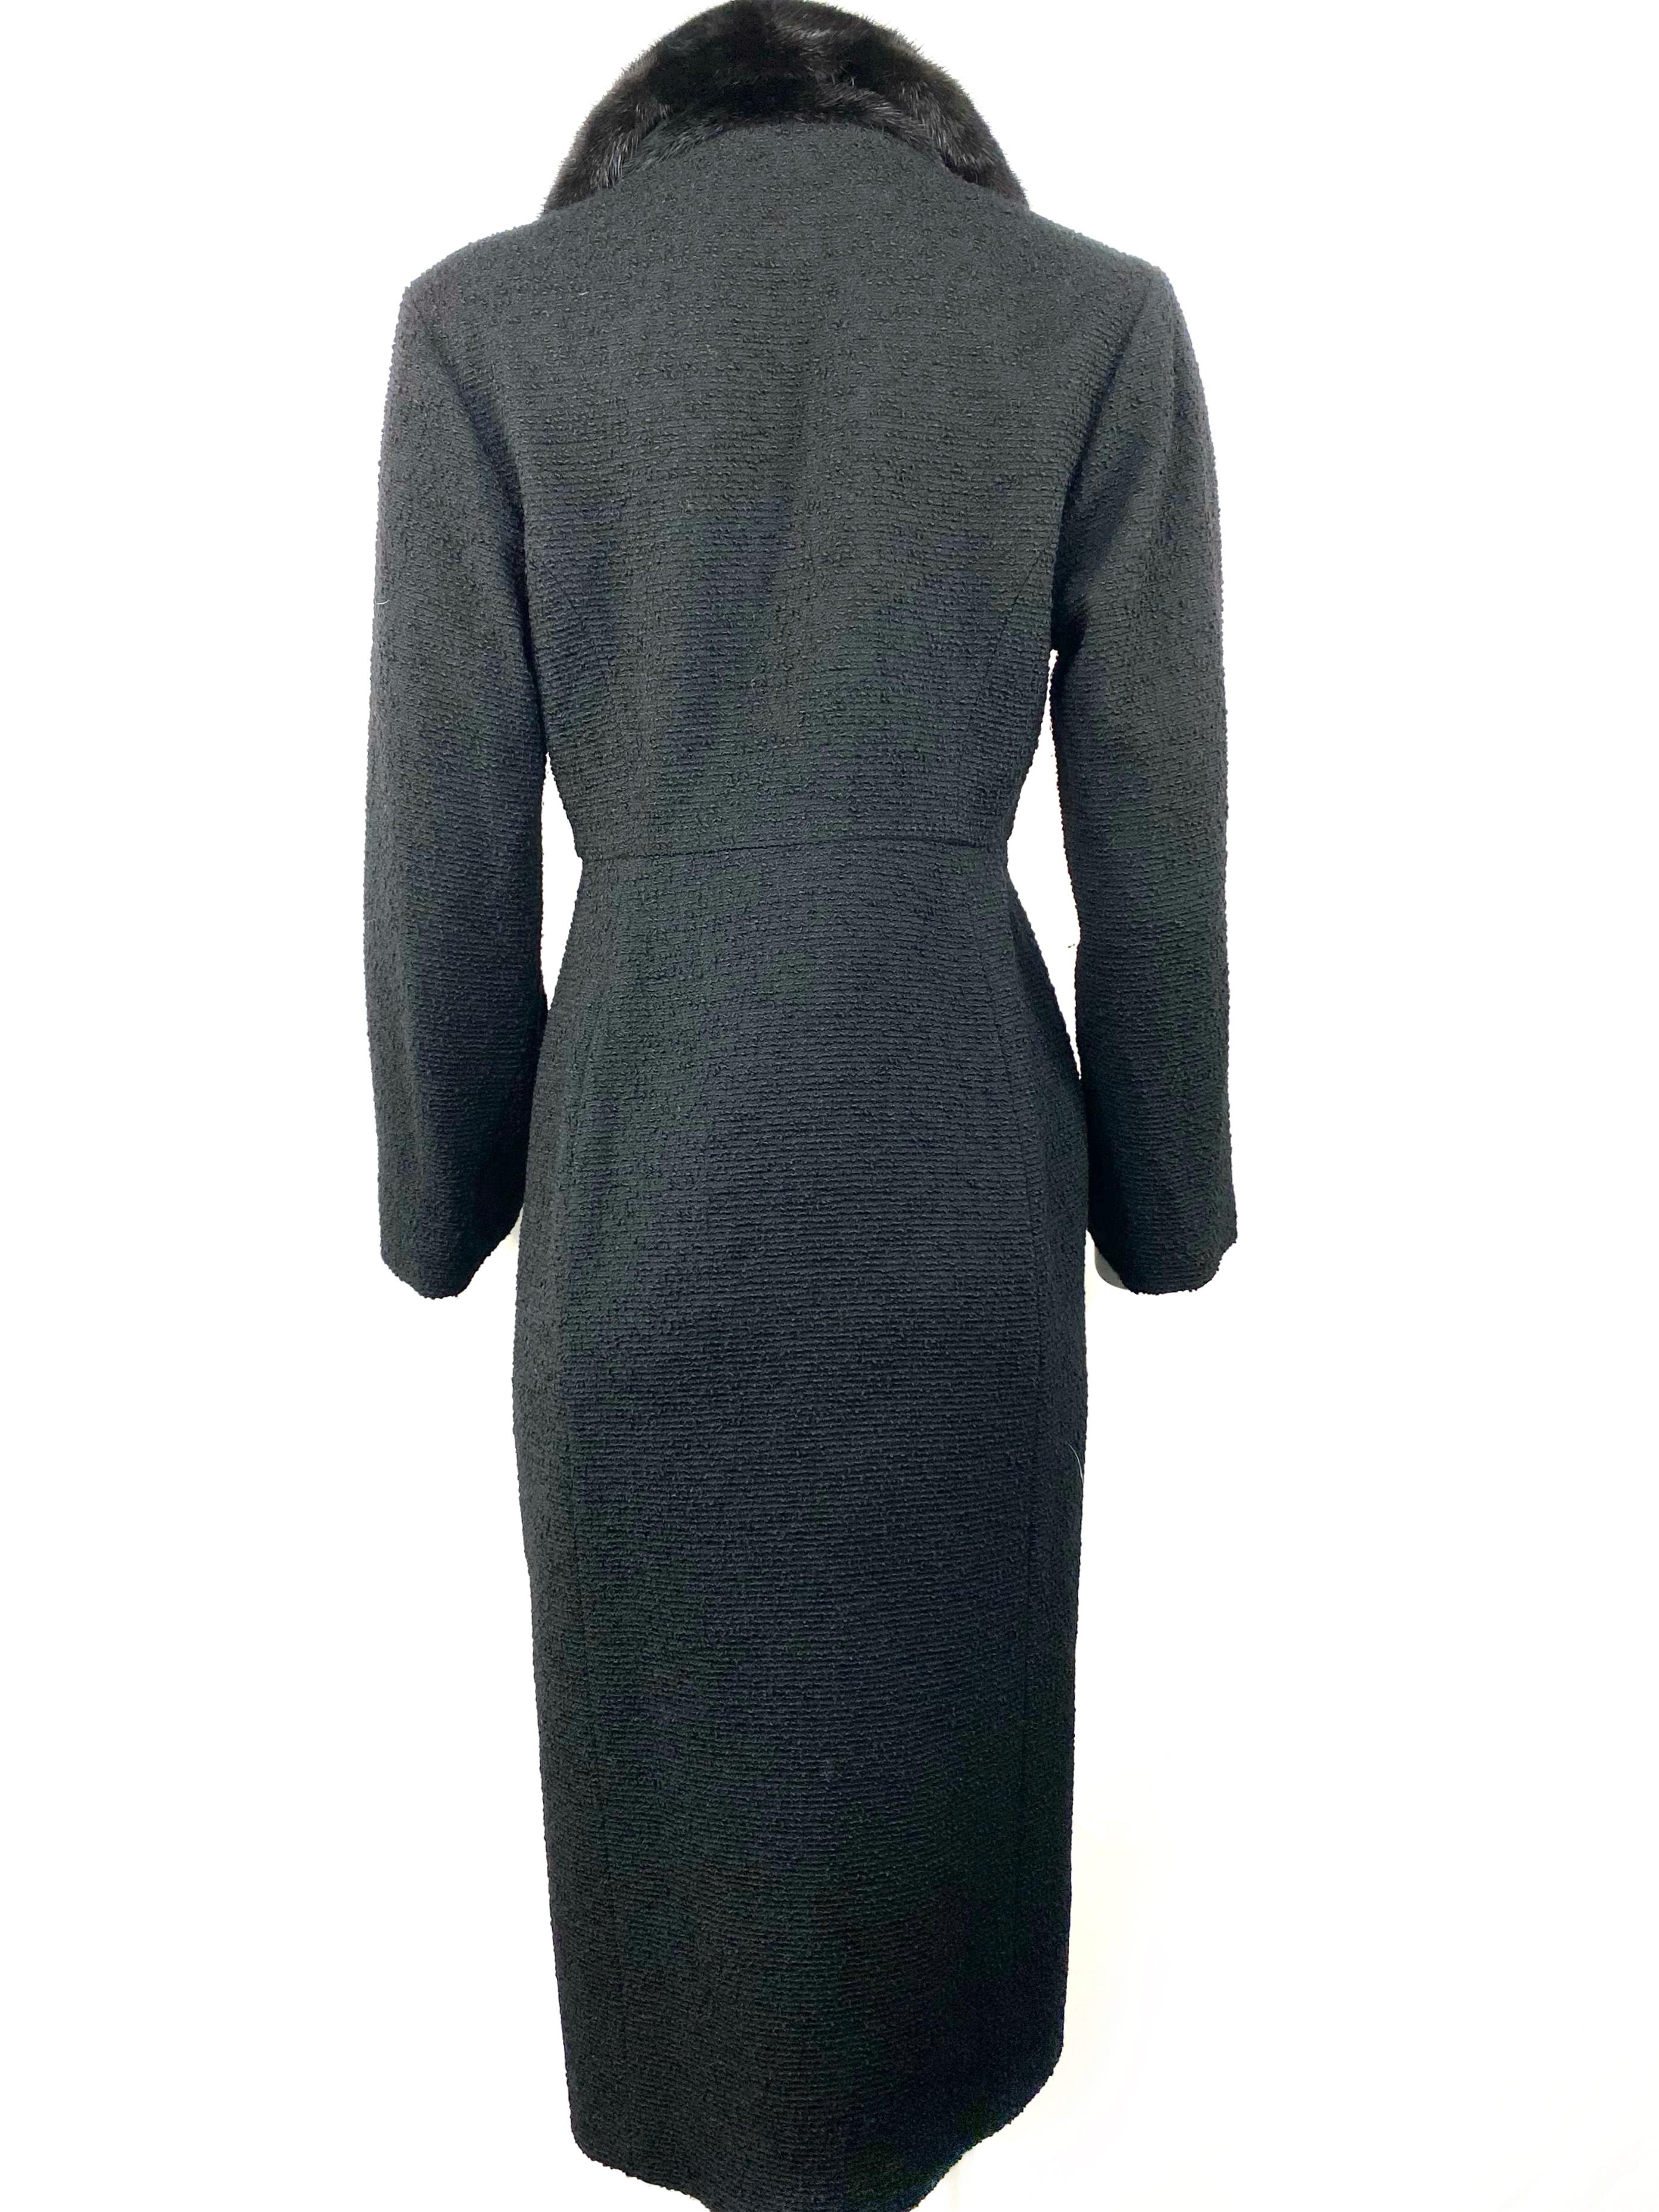 Christian Dior - Veste manteau en tweed de laine noir et fourrure, taille 40 3